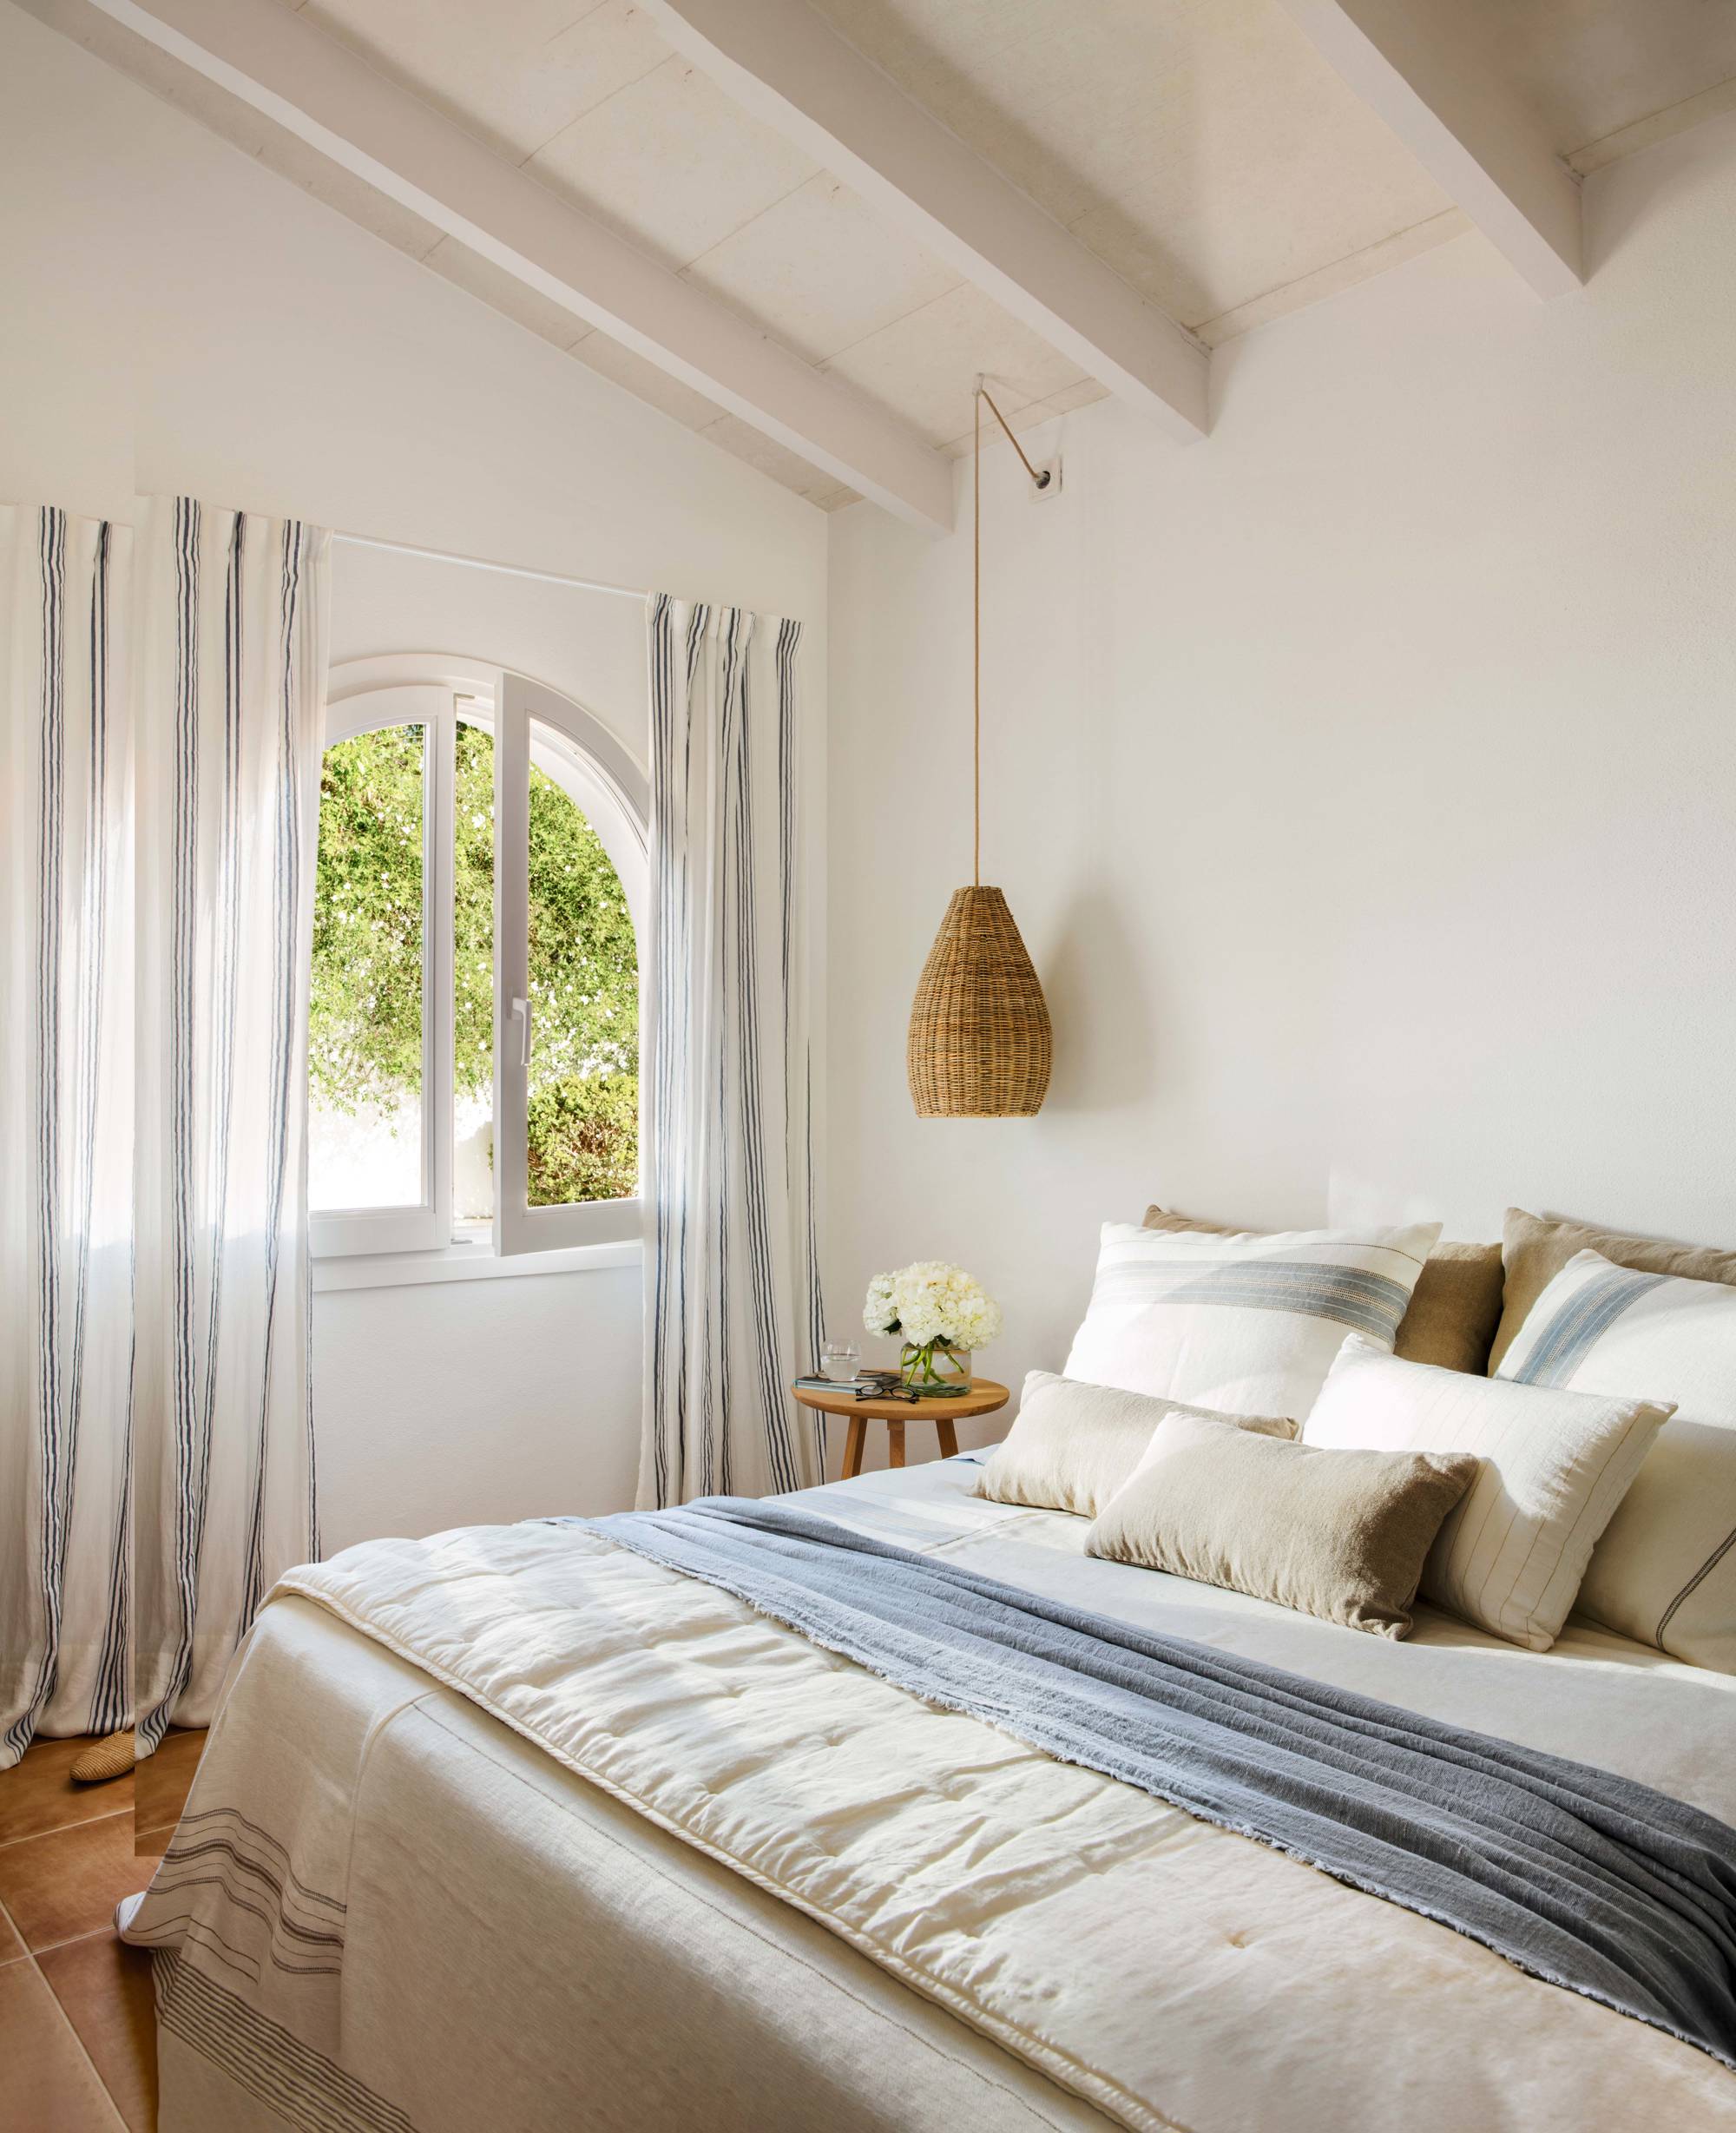 Dormitorio blanco con cortinas de rayas azules